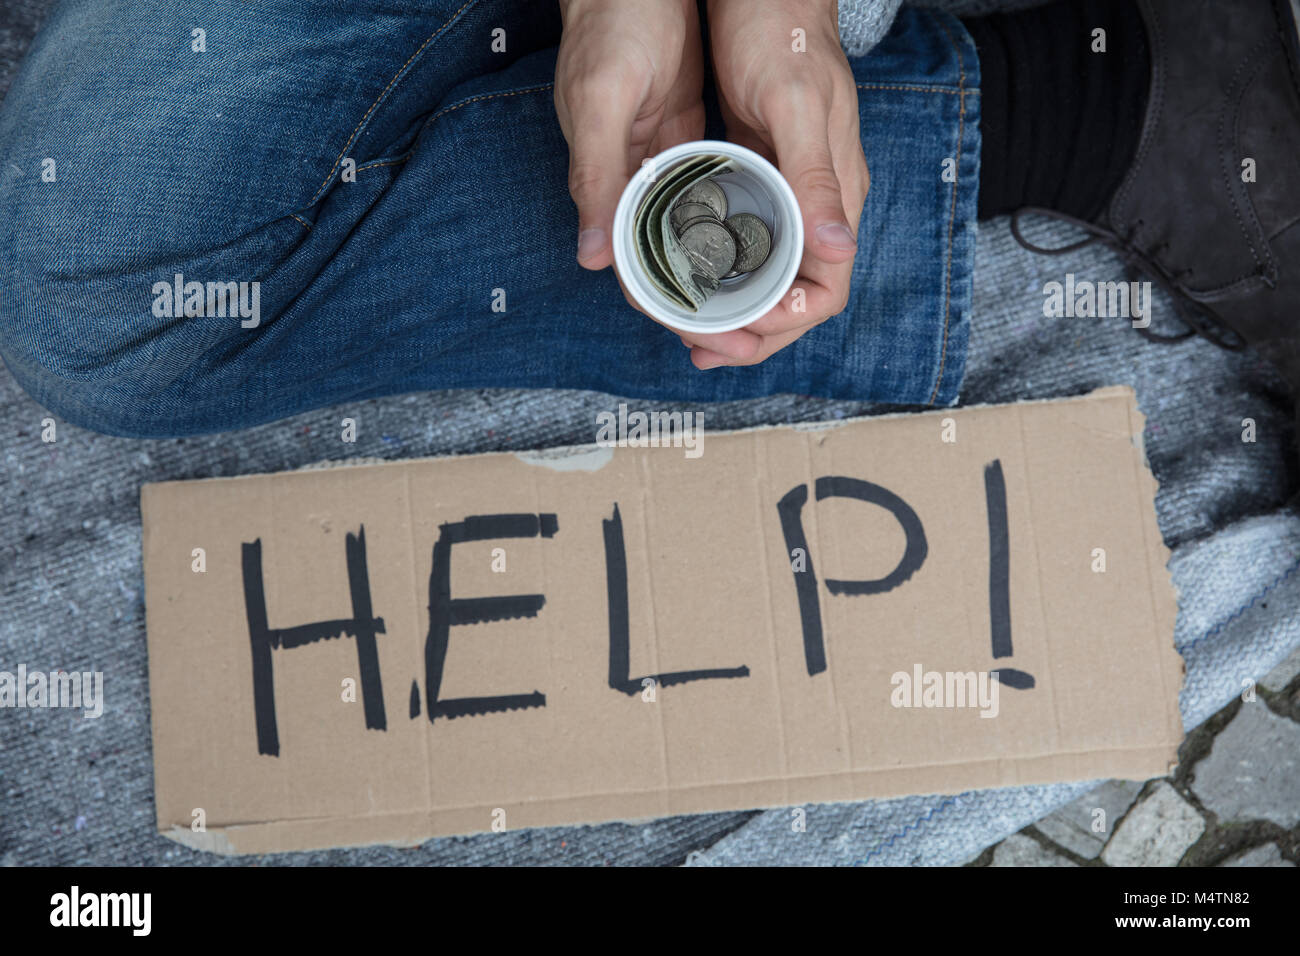 Ansicht von Obdachlosen Mann mit Glas Geld um Hilfe zu bitten Stockfoto